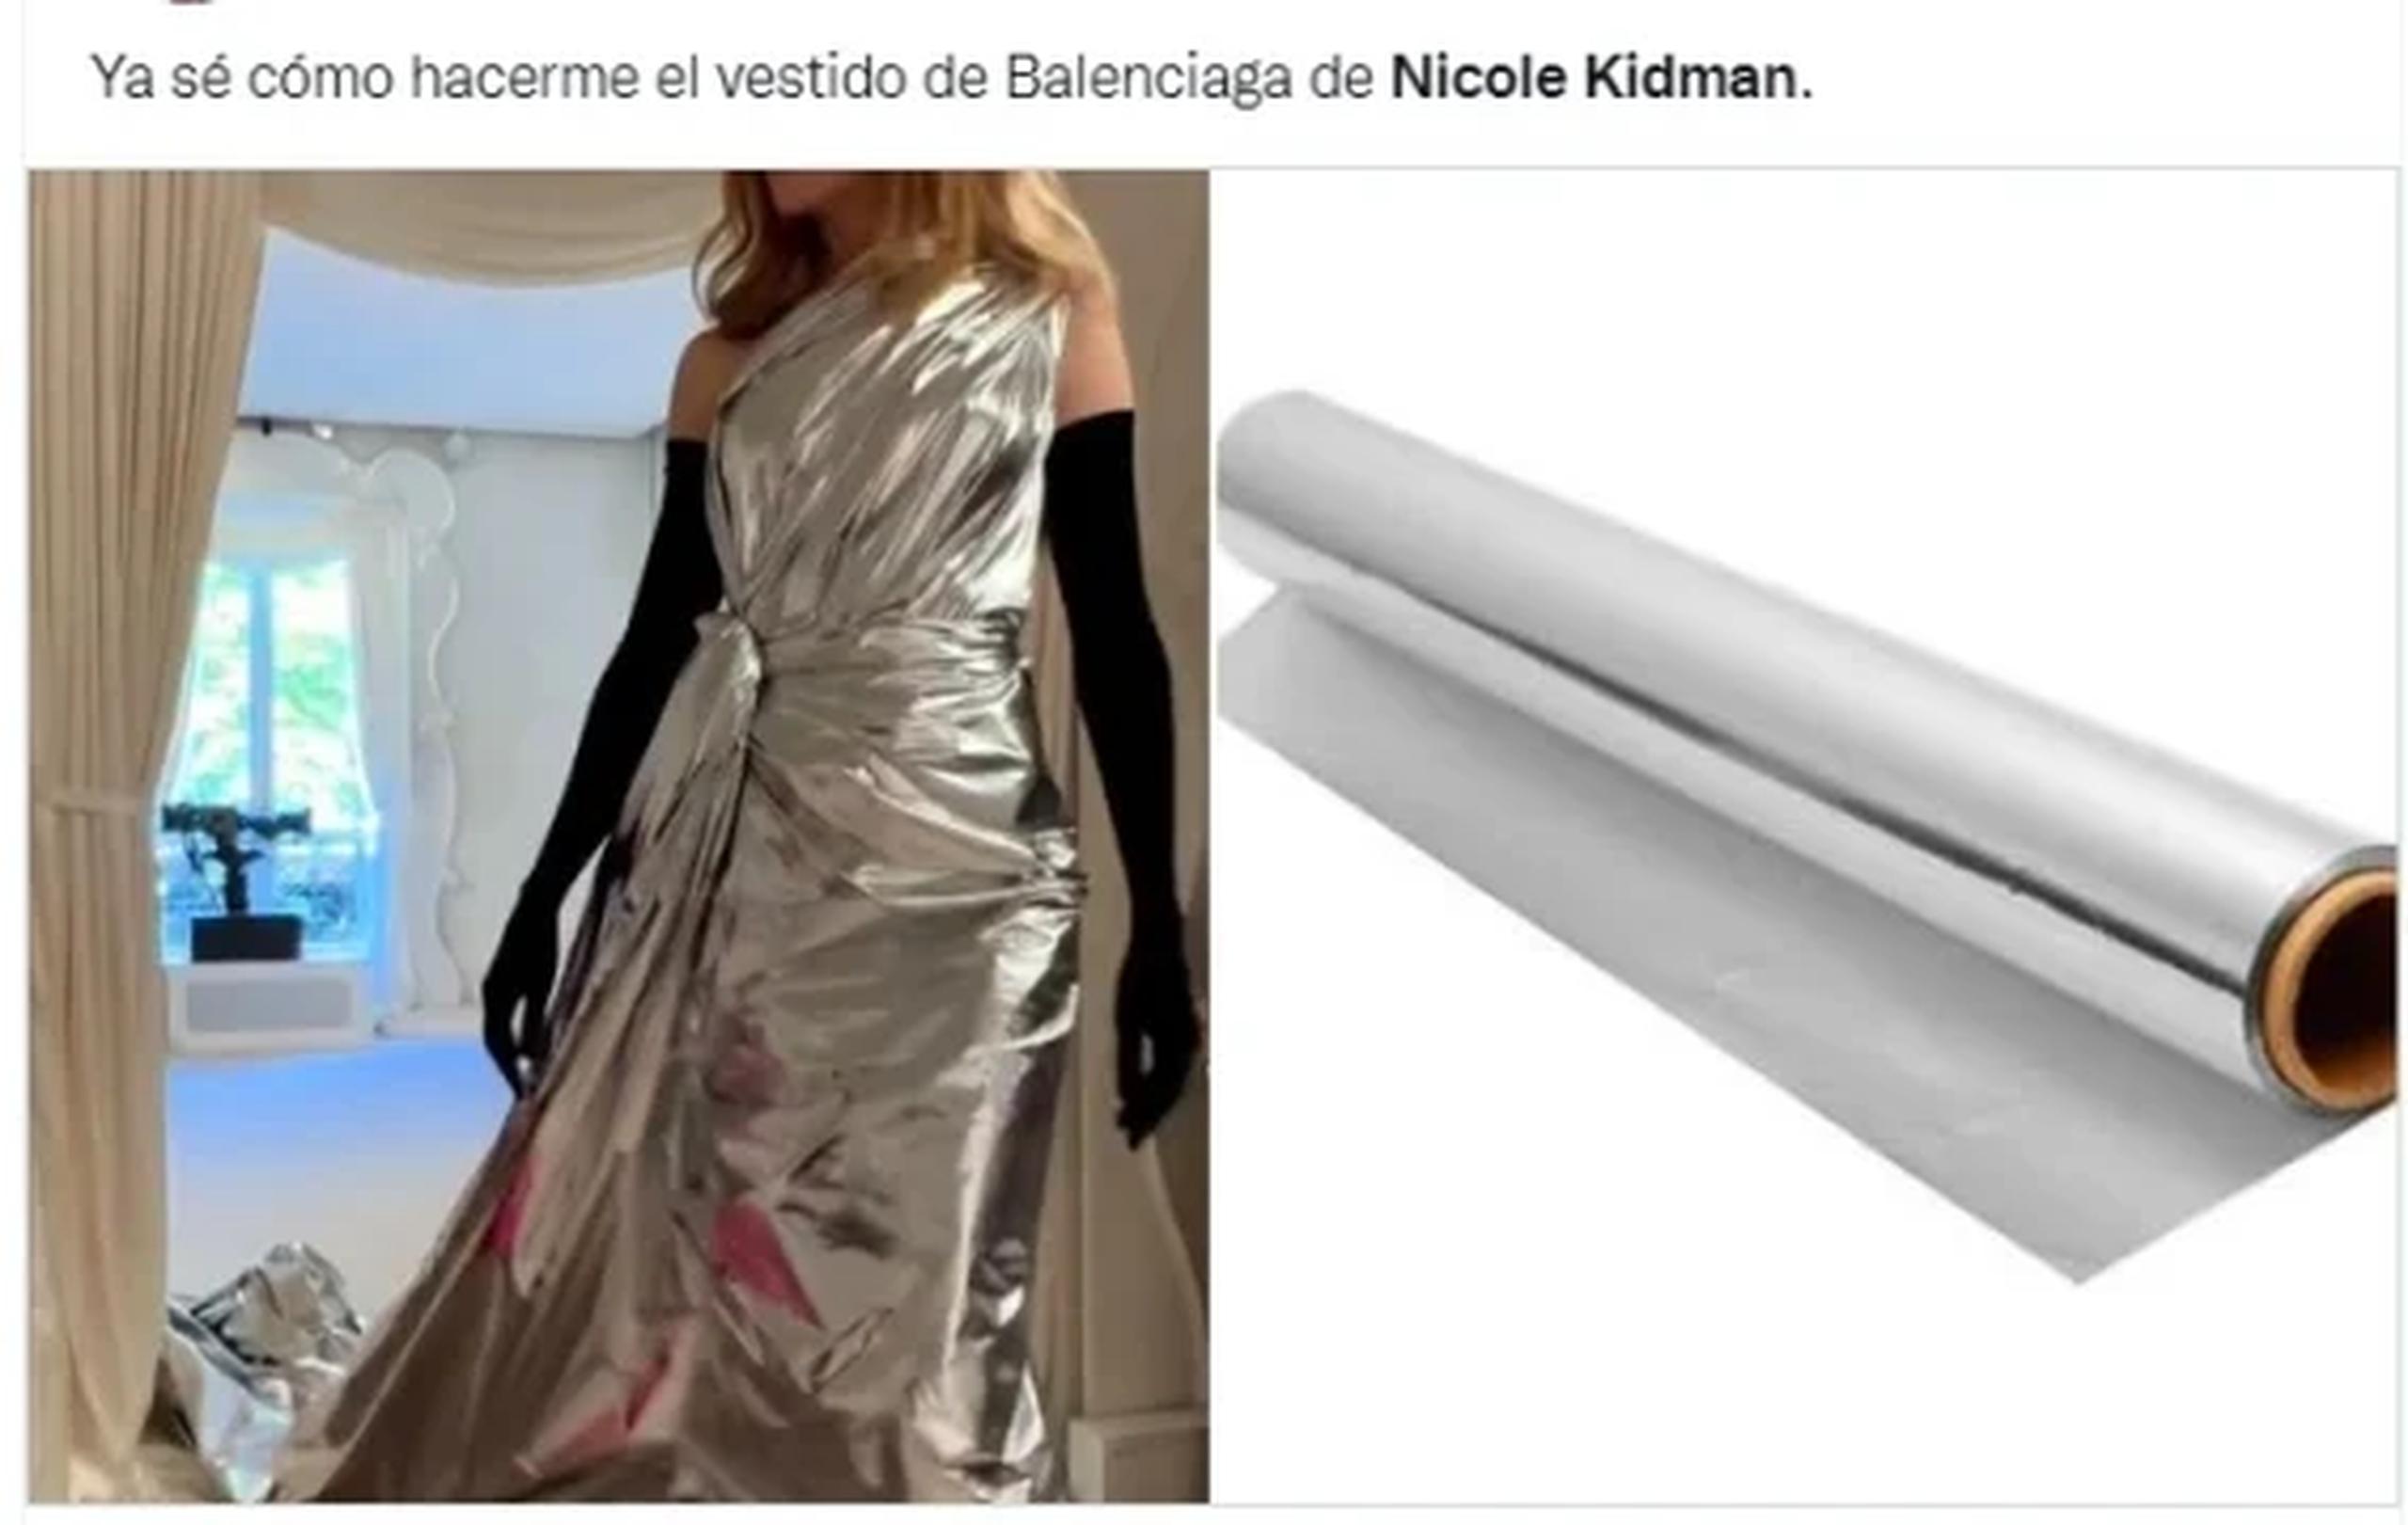 Algunos compararon el vestido que lució Kidman con papel de aluminio.